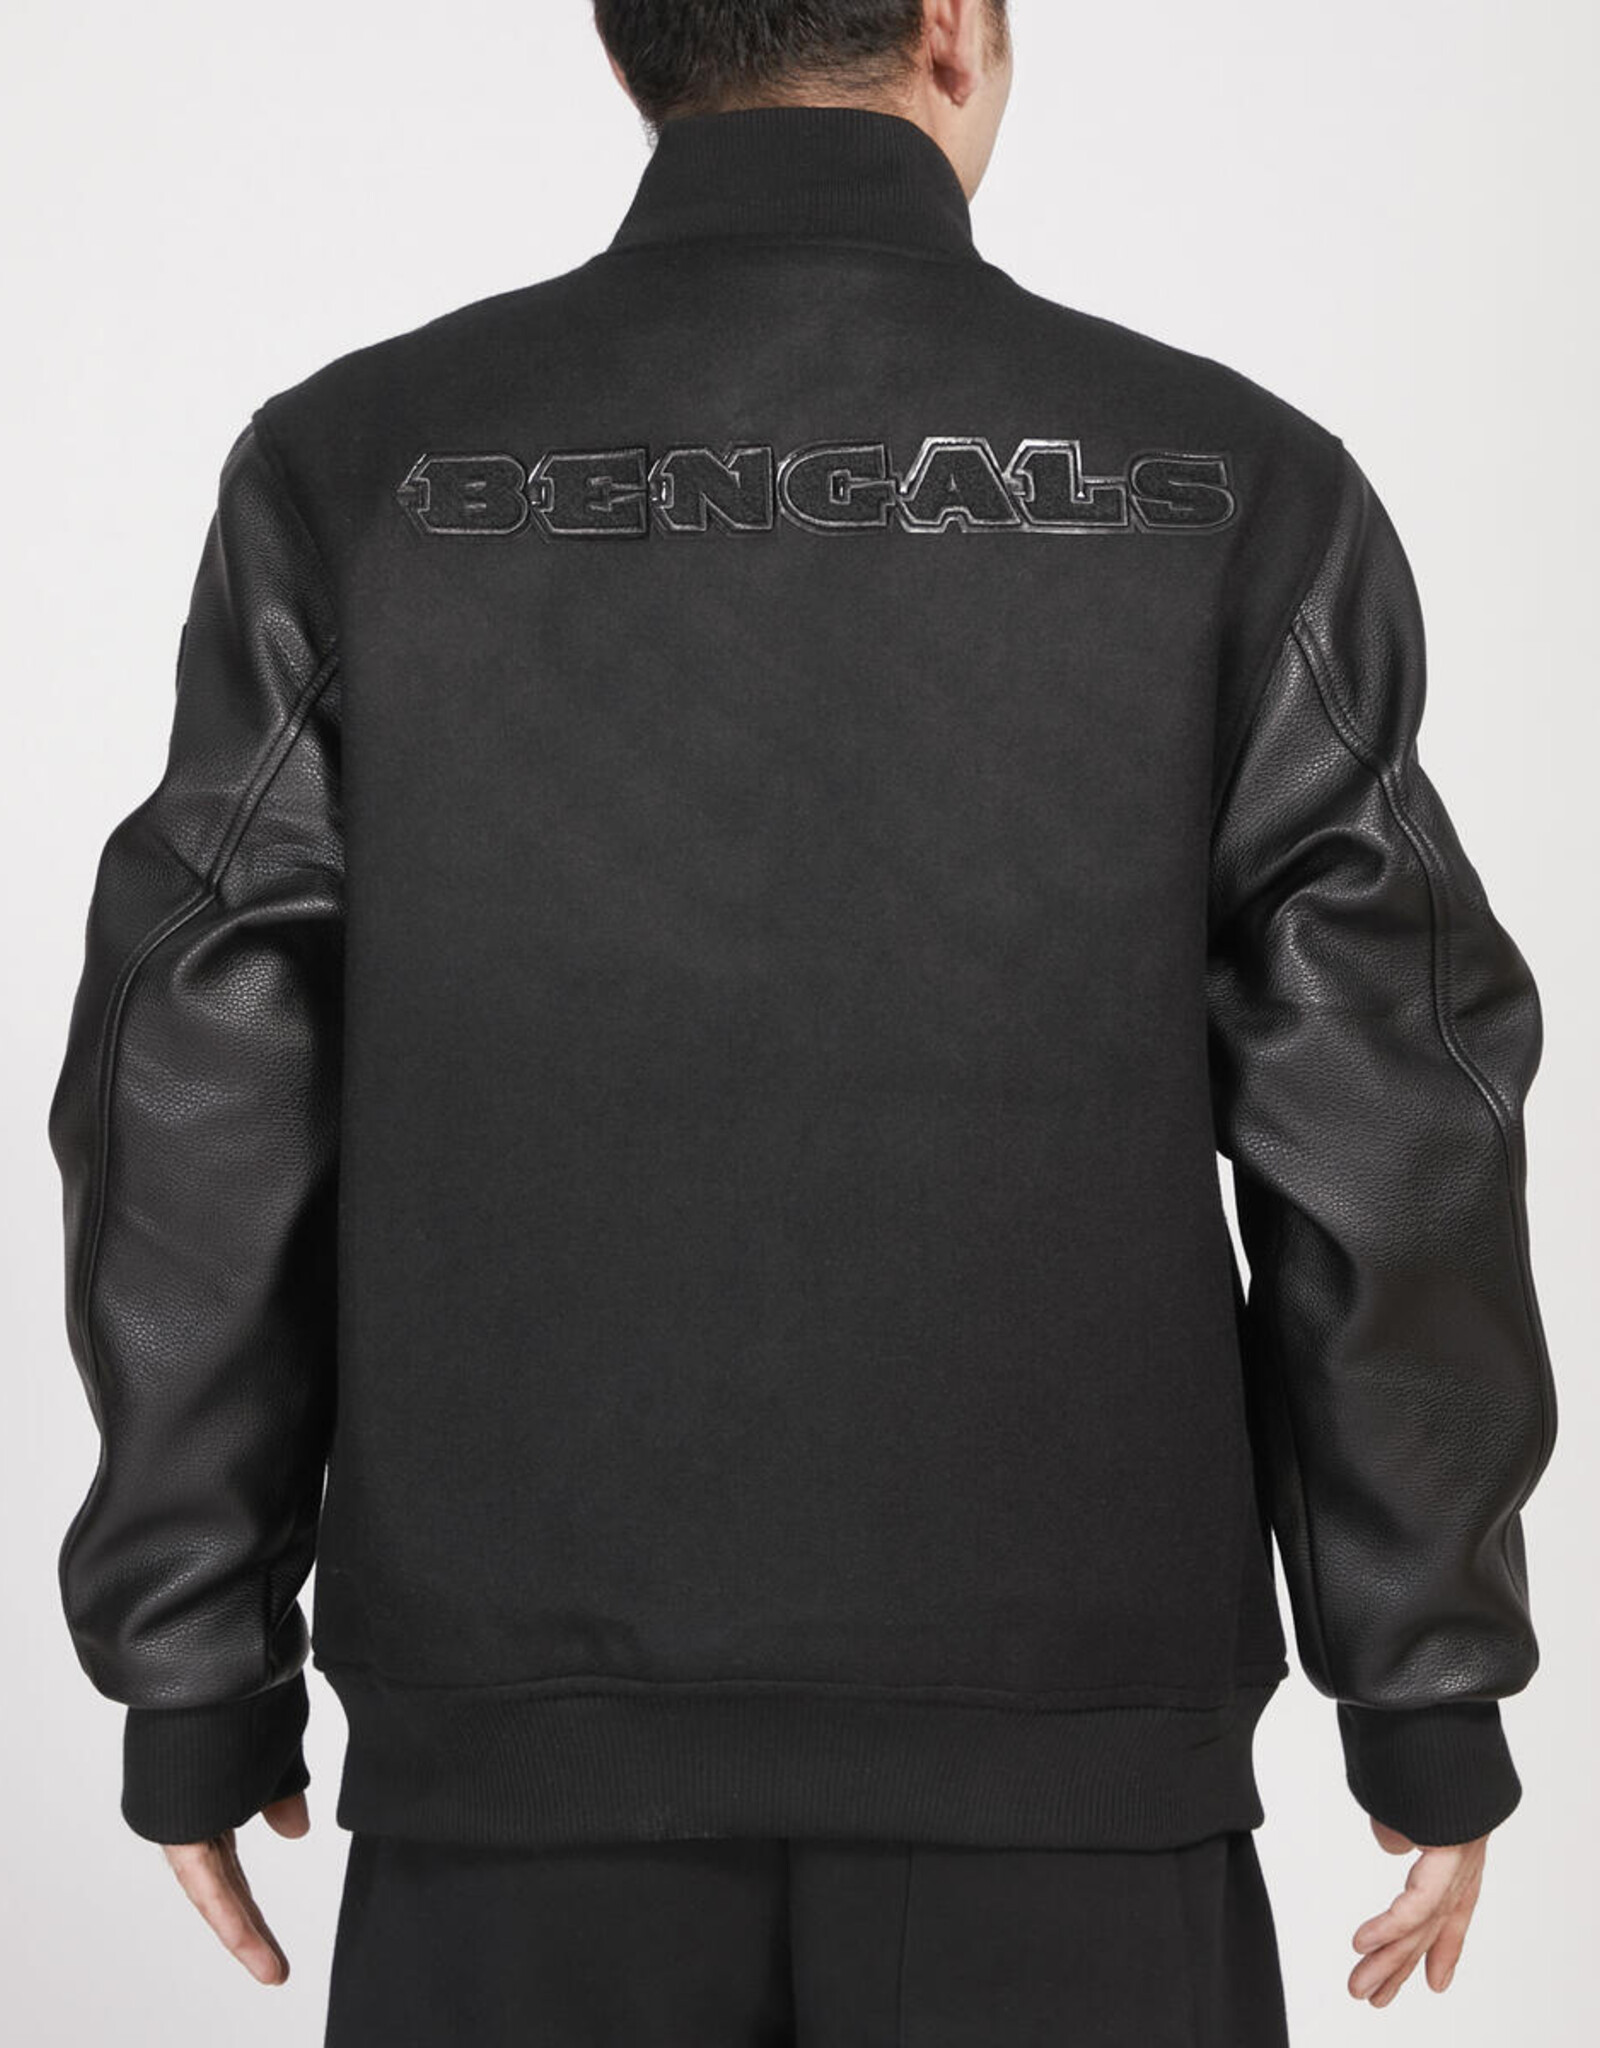 Pro Standard Cincinnati Bengals Men's Triple Black Varsity Jacket